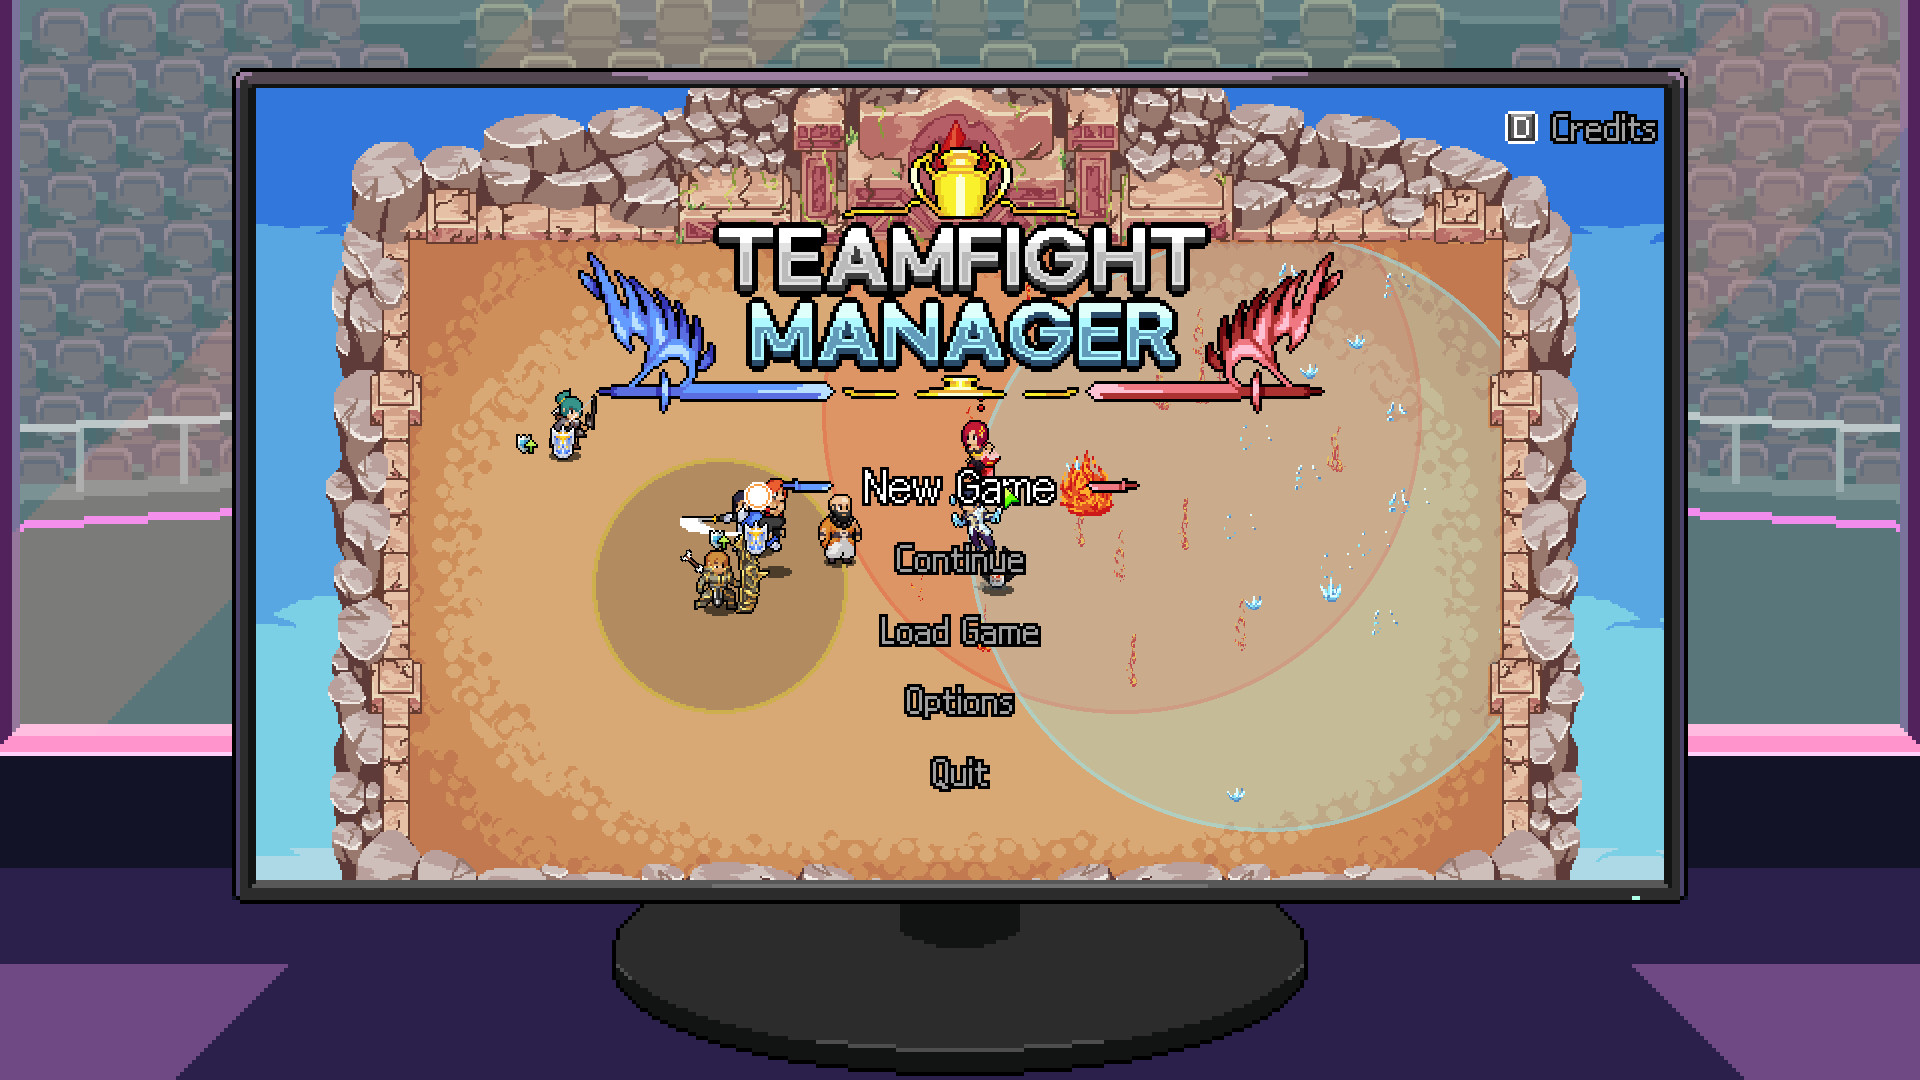 团战经理 Teamfight Manager 1.4.4 Mac 中文破解版 萌酷像素大团战